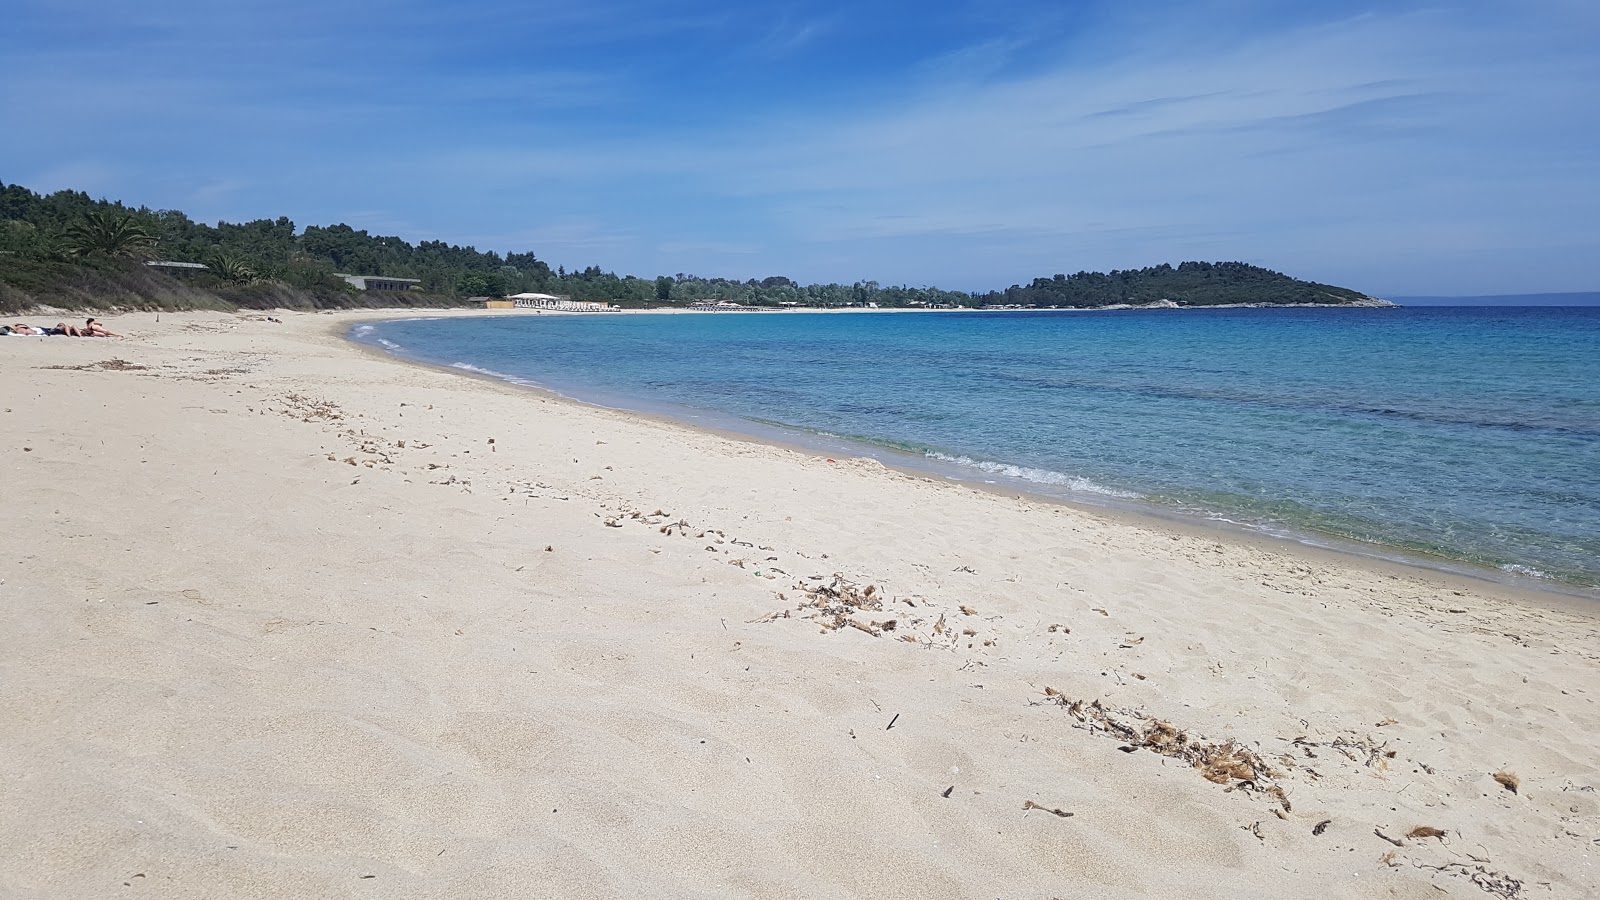 Fotografie cu Paliouri beach - locul popular printre cunoscătorii de relaxare